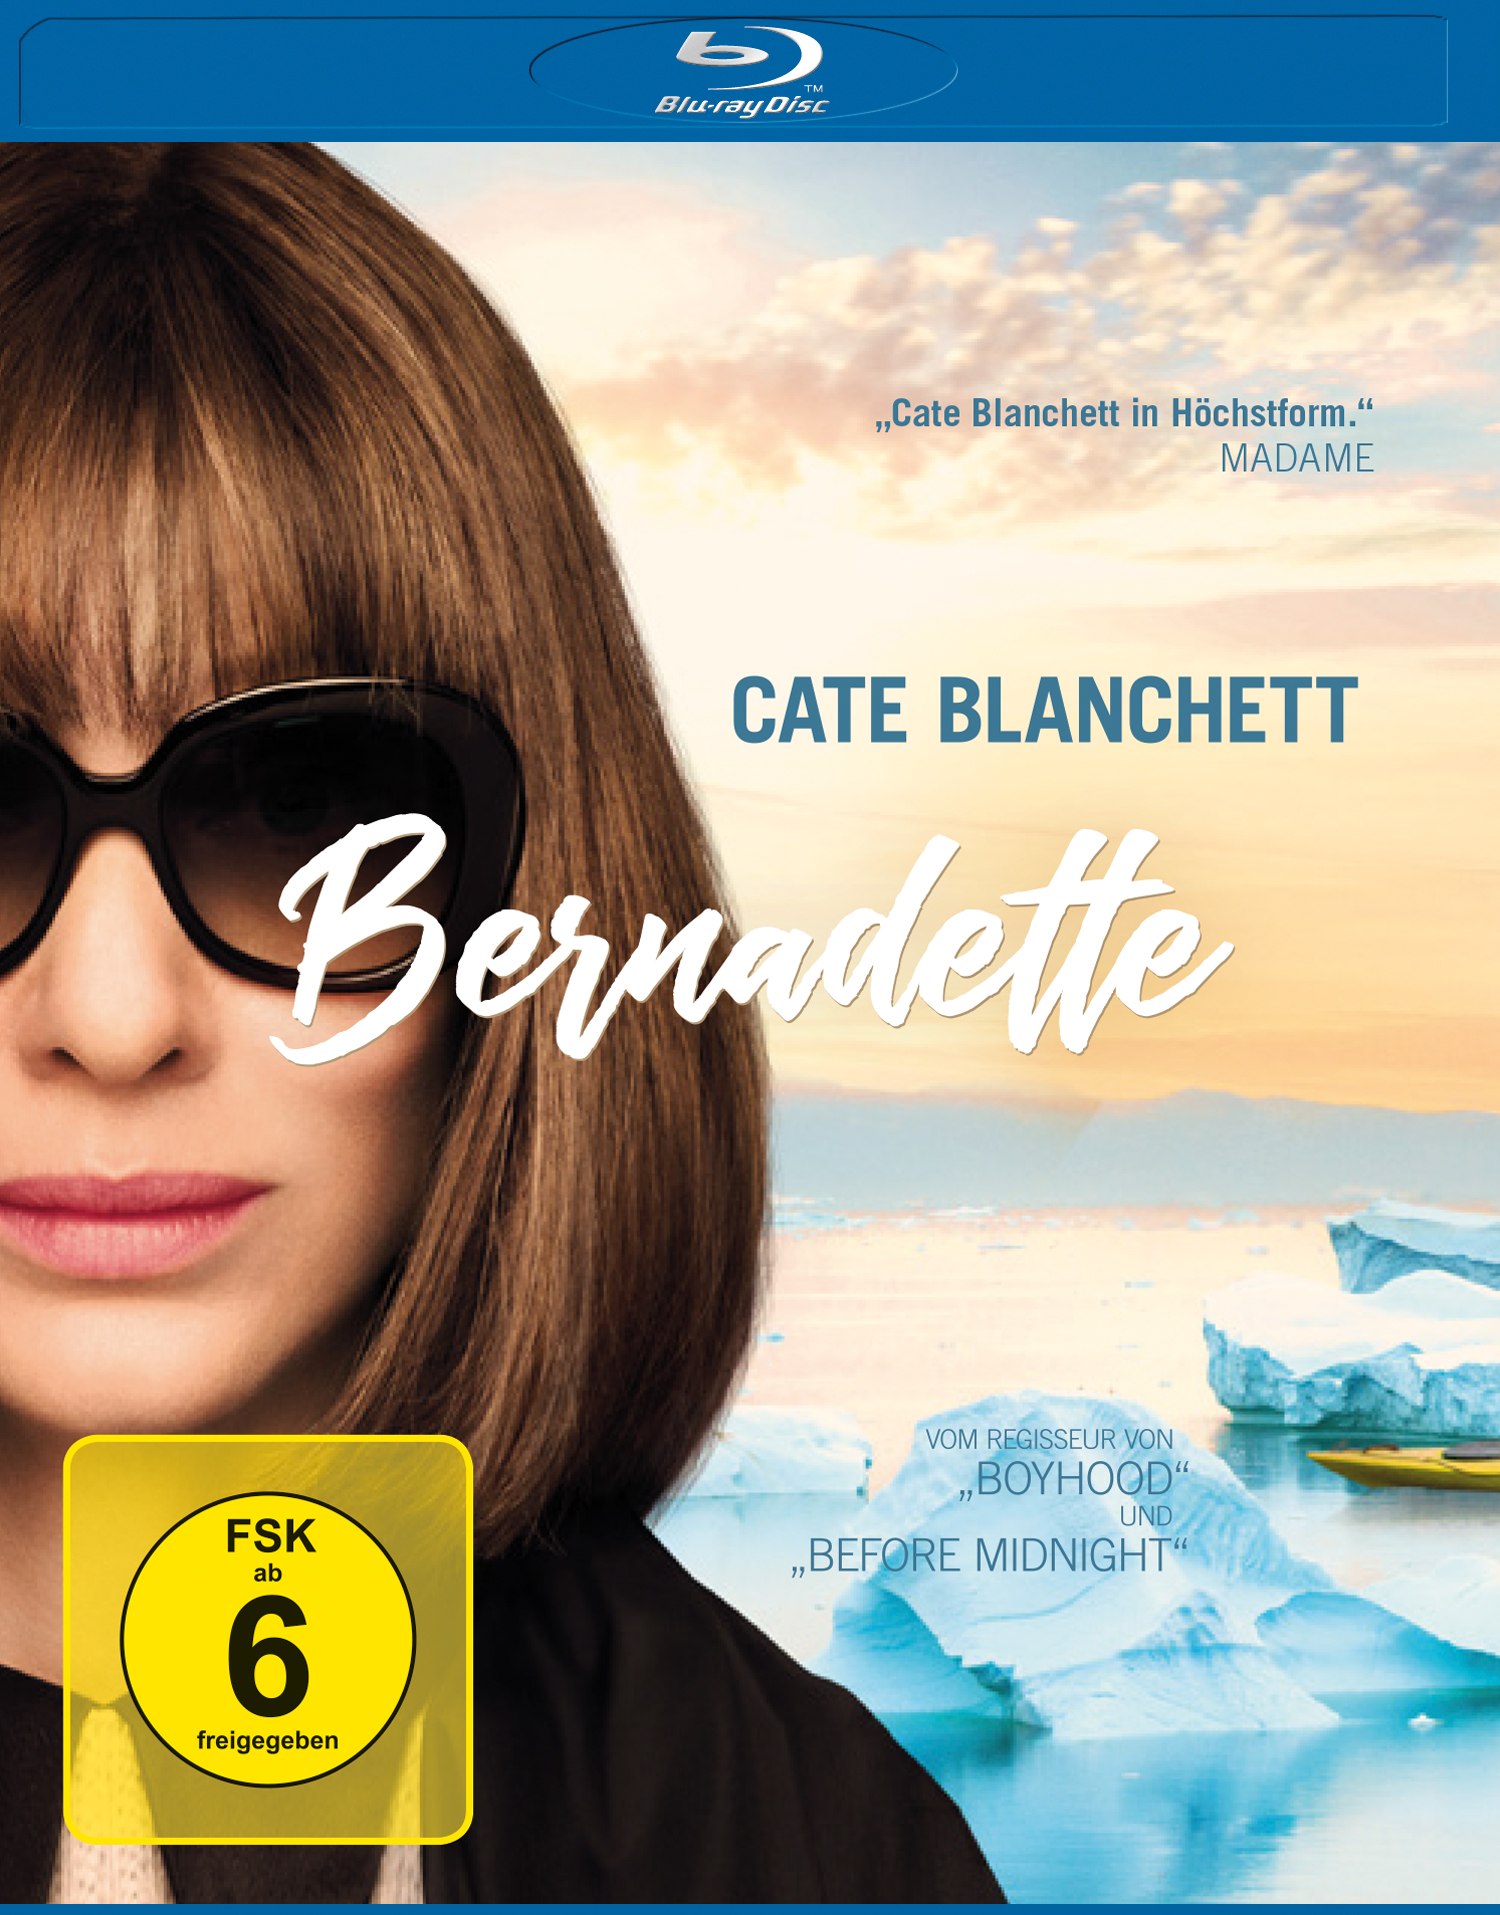 Bernadette Blu-ray